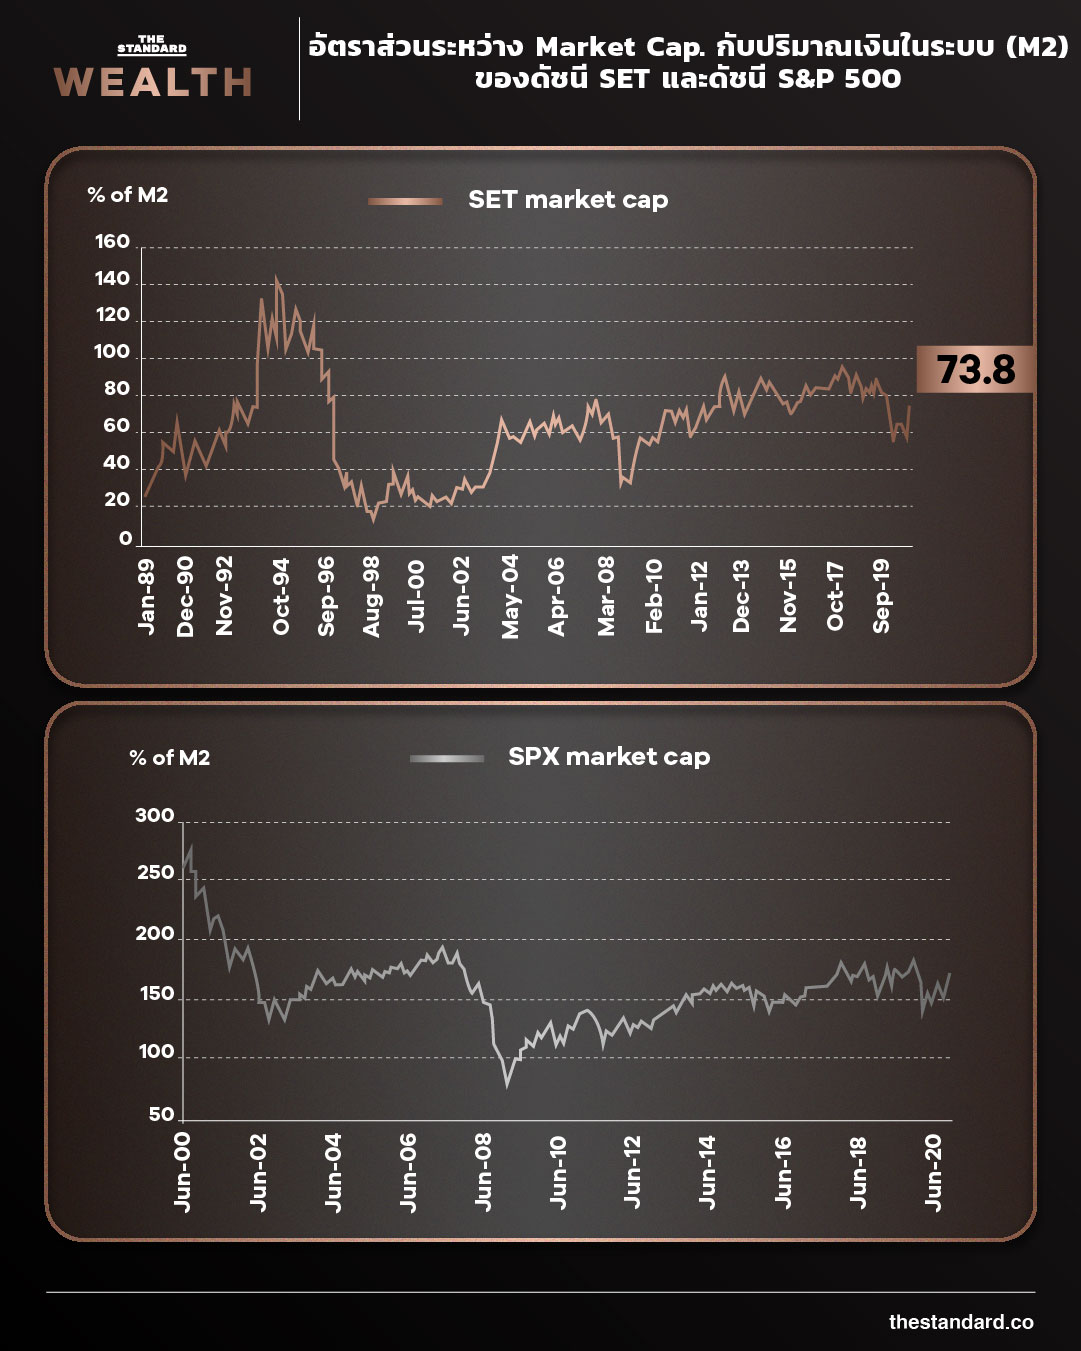 อัตราส่วนระหว่าง Market Cap. กับปริมาณเงินในระบบ (M2) ของดัชนี SET และดัชนี S&P 500